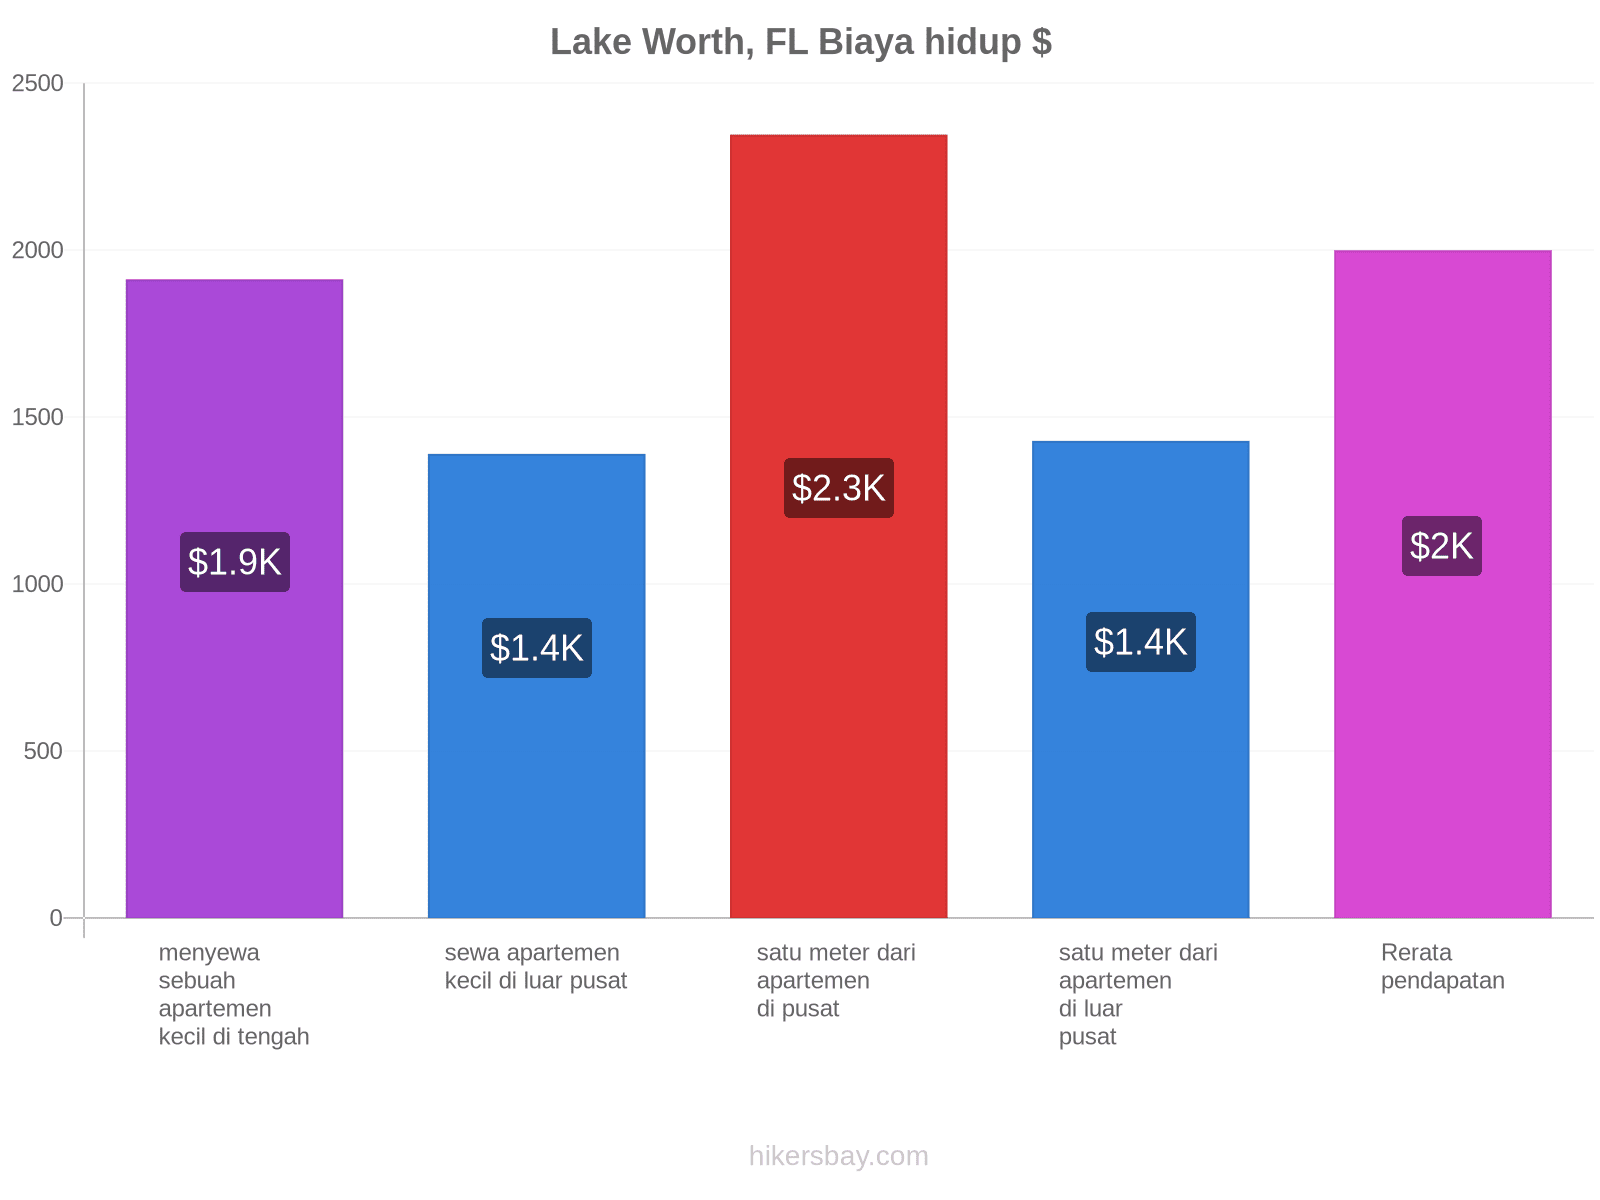 Lake Worth, FL biaya hidup hikersbay.com